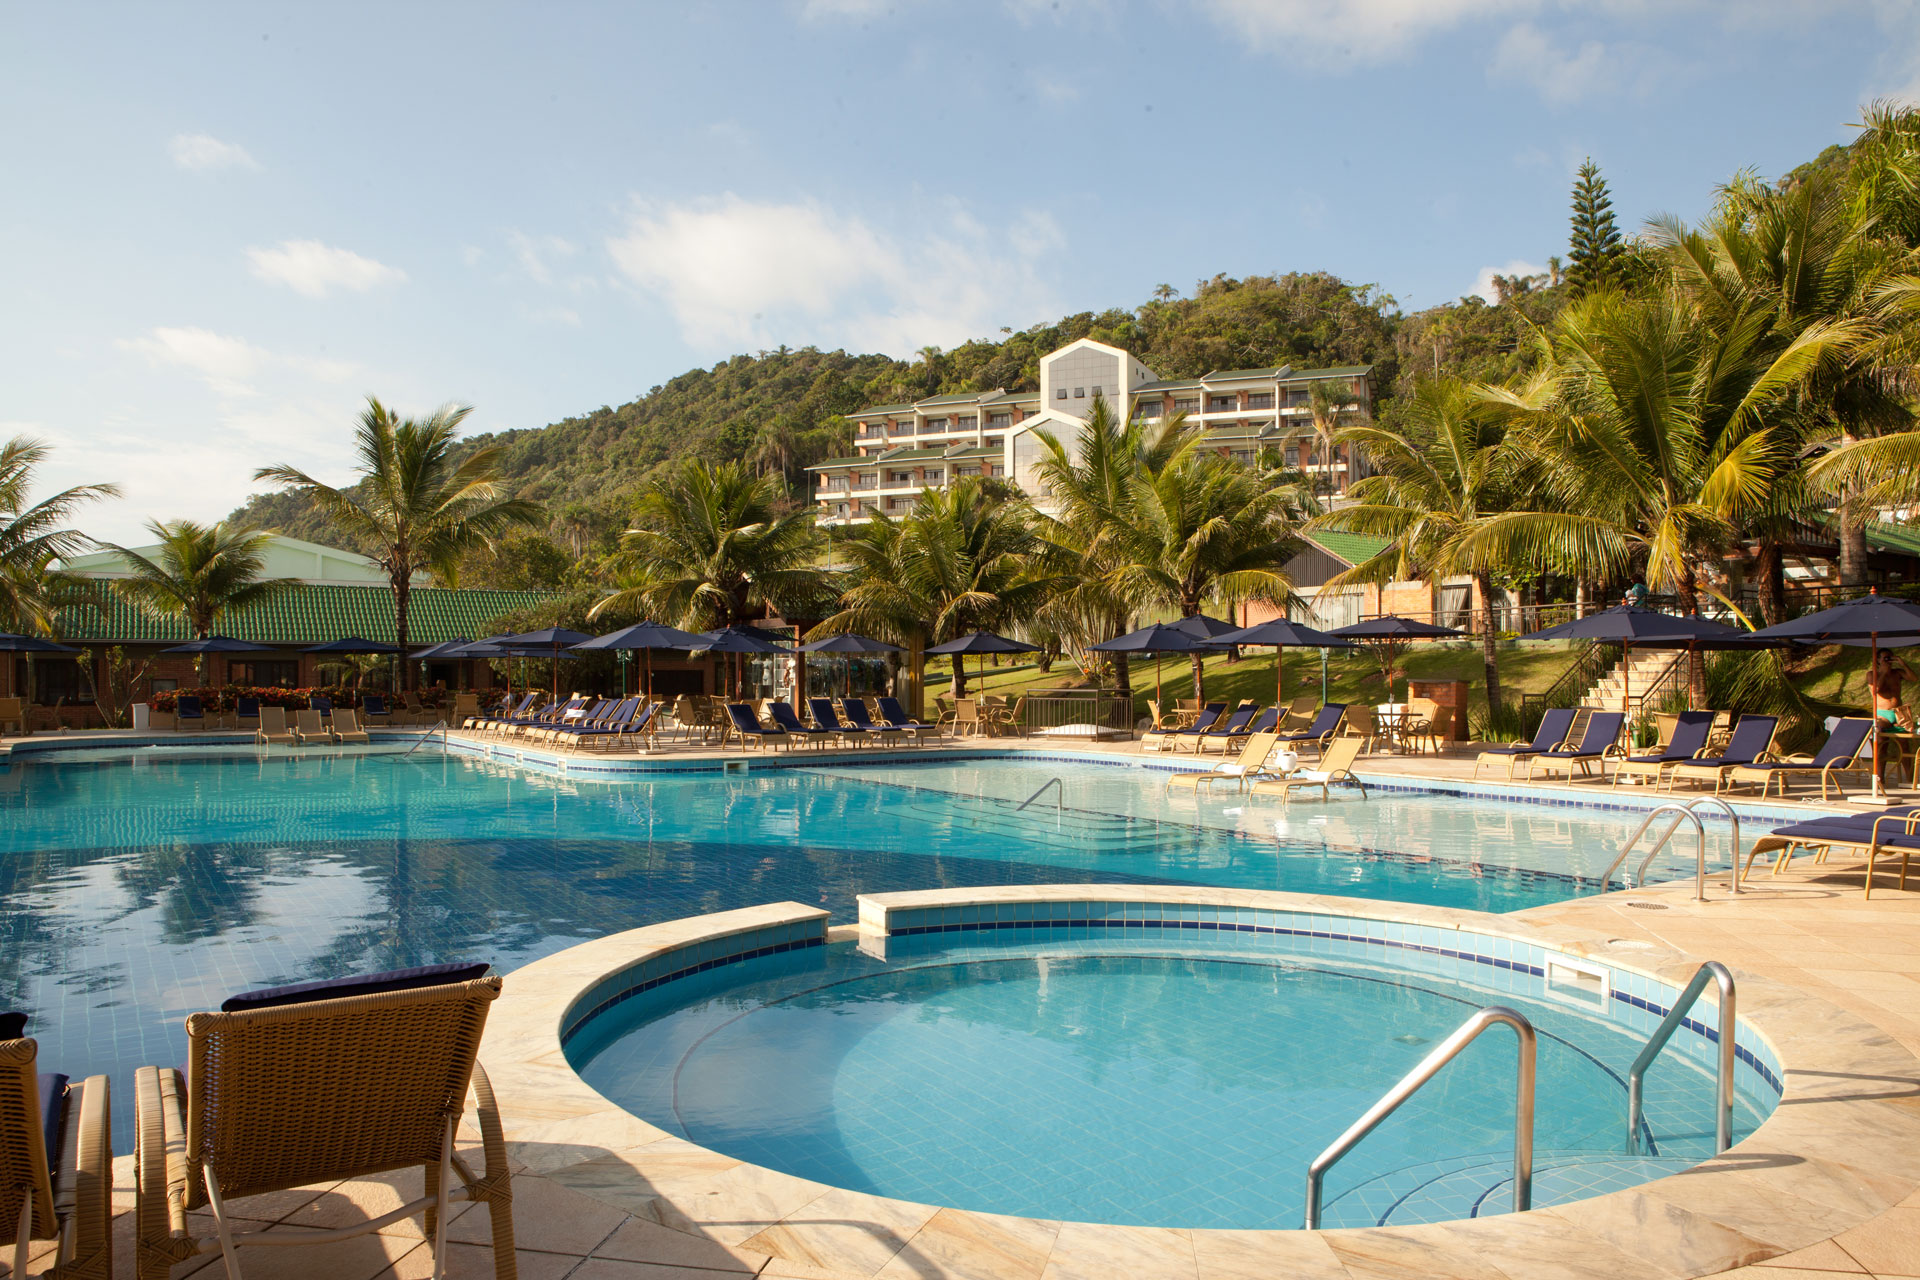 Conheça o Infinity Blue Resort & Spa - TurismoEtc TV 